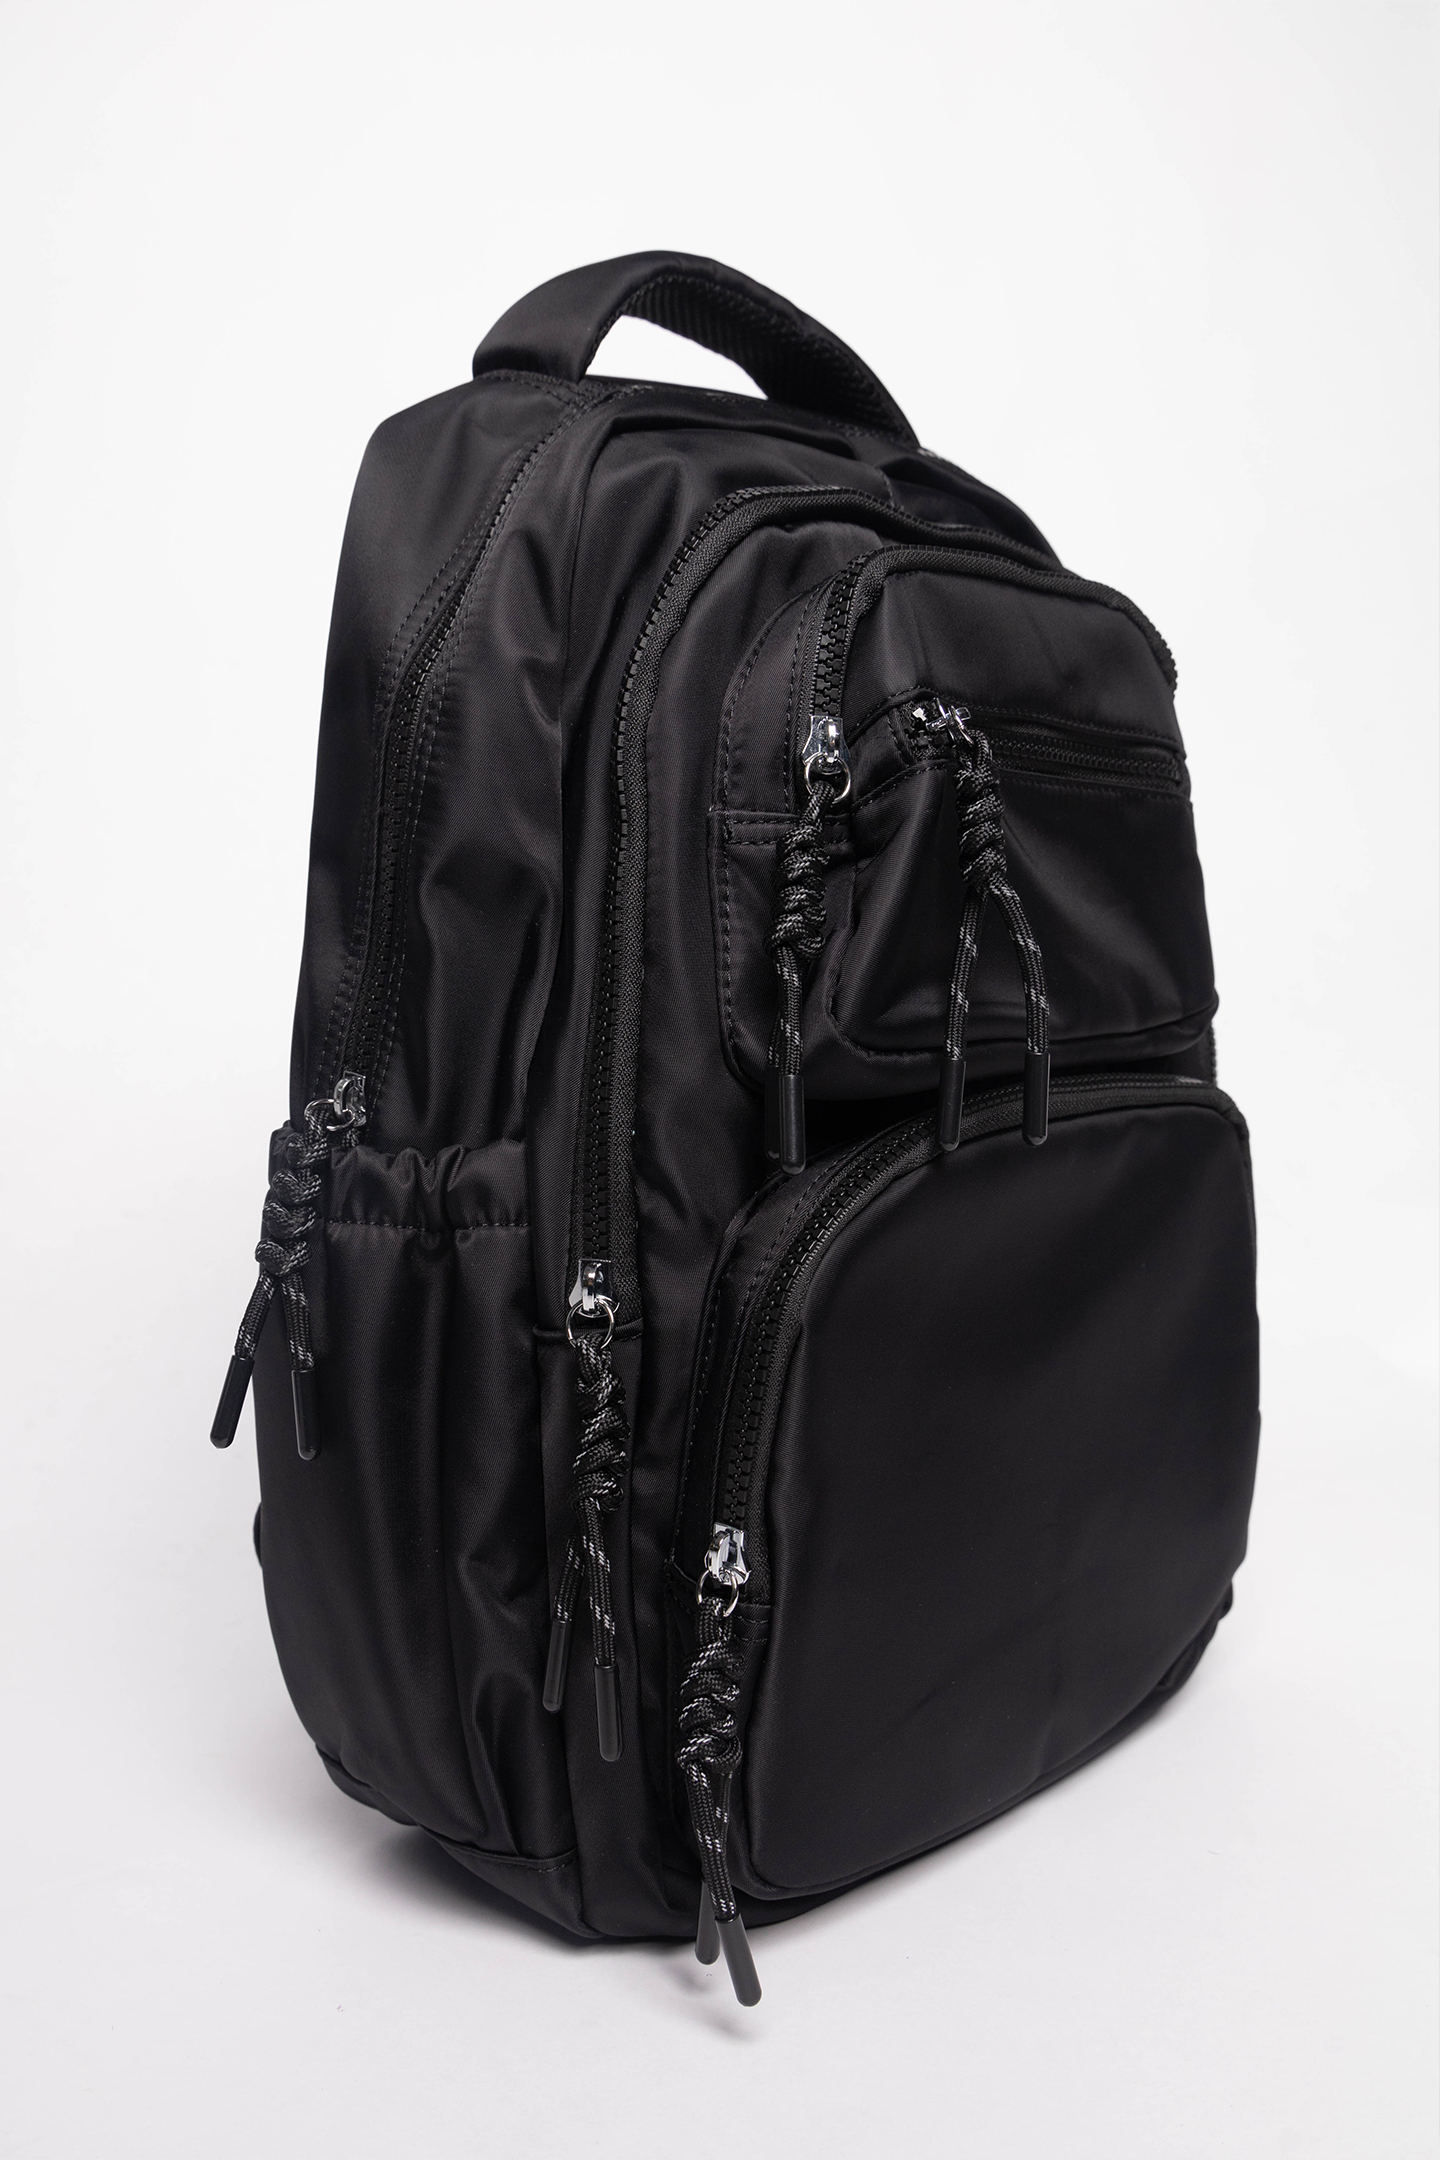 Sens Bagpack in Black